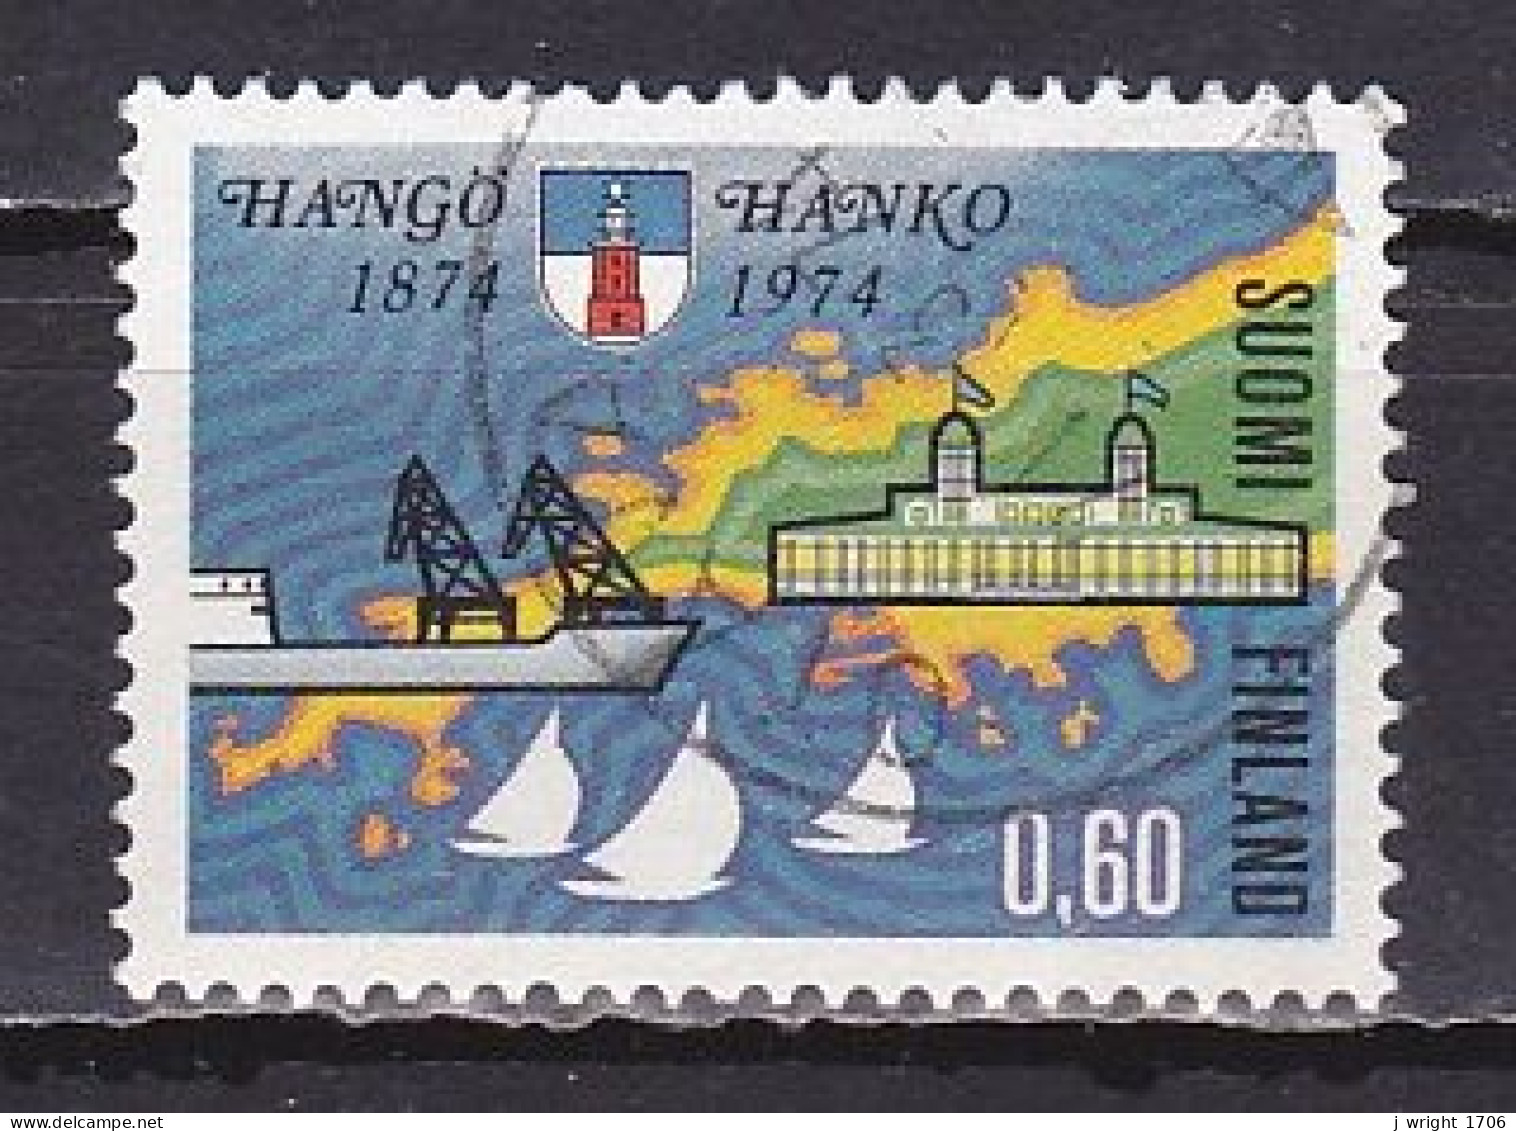 Finland, 1974, Hanko/Hangö Centenary, 0.60mk, USED - Gebruikt